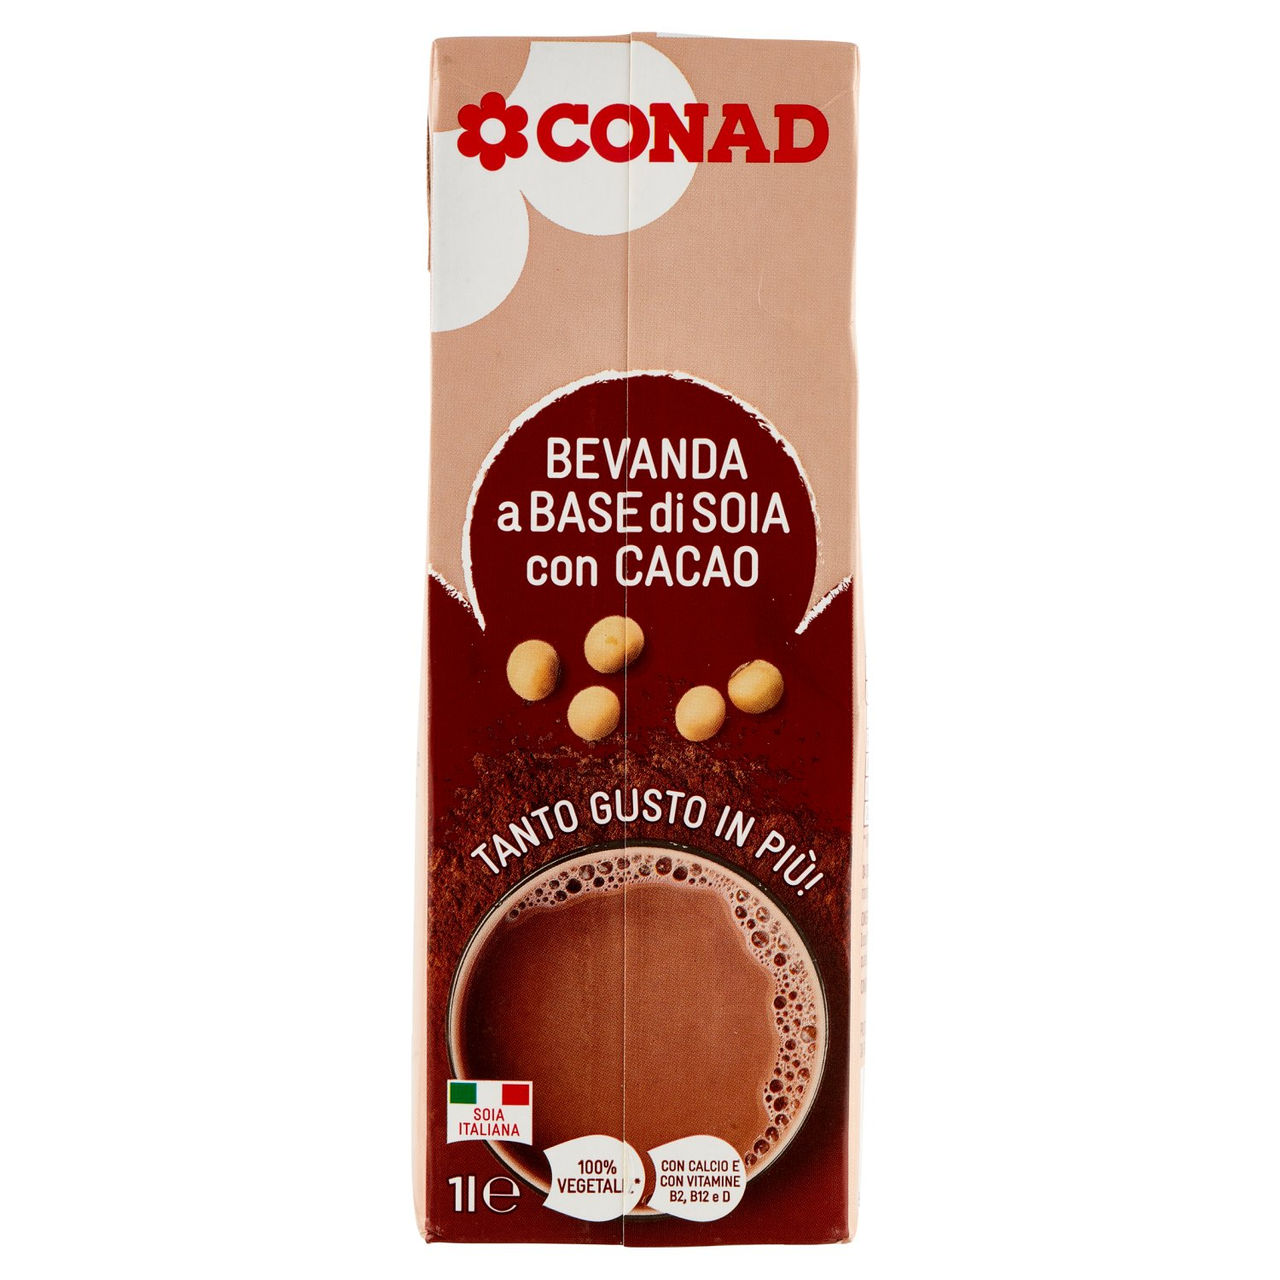 CONAD Bevanda a Base di Soia con Cacao 1 l